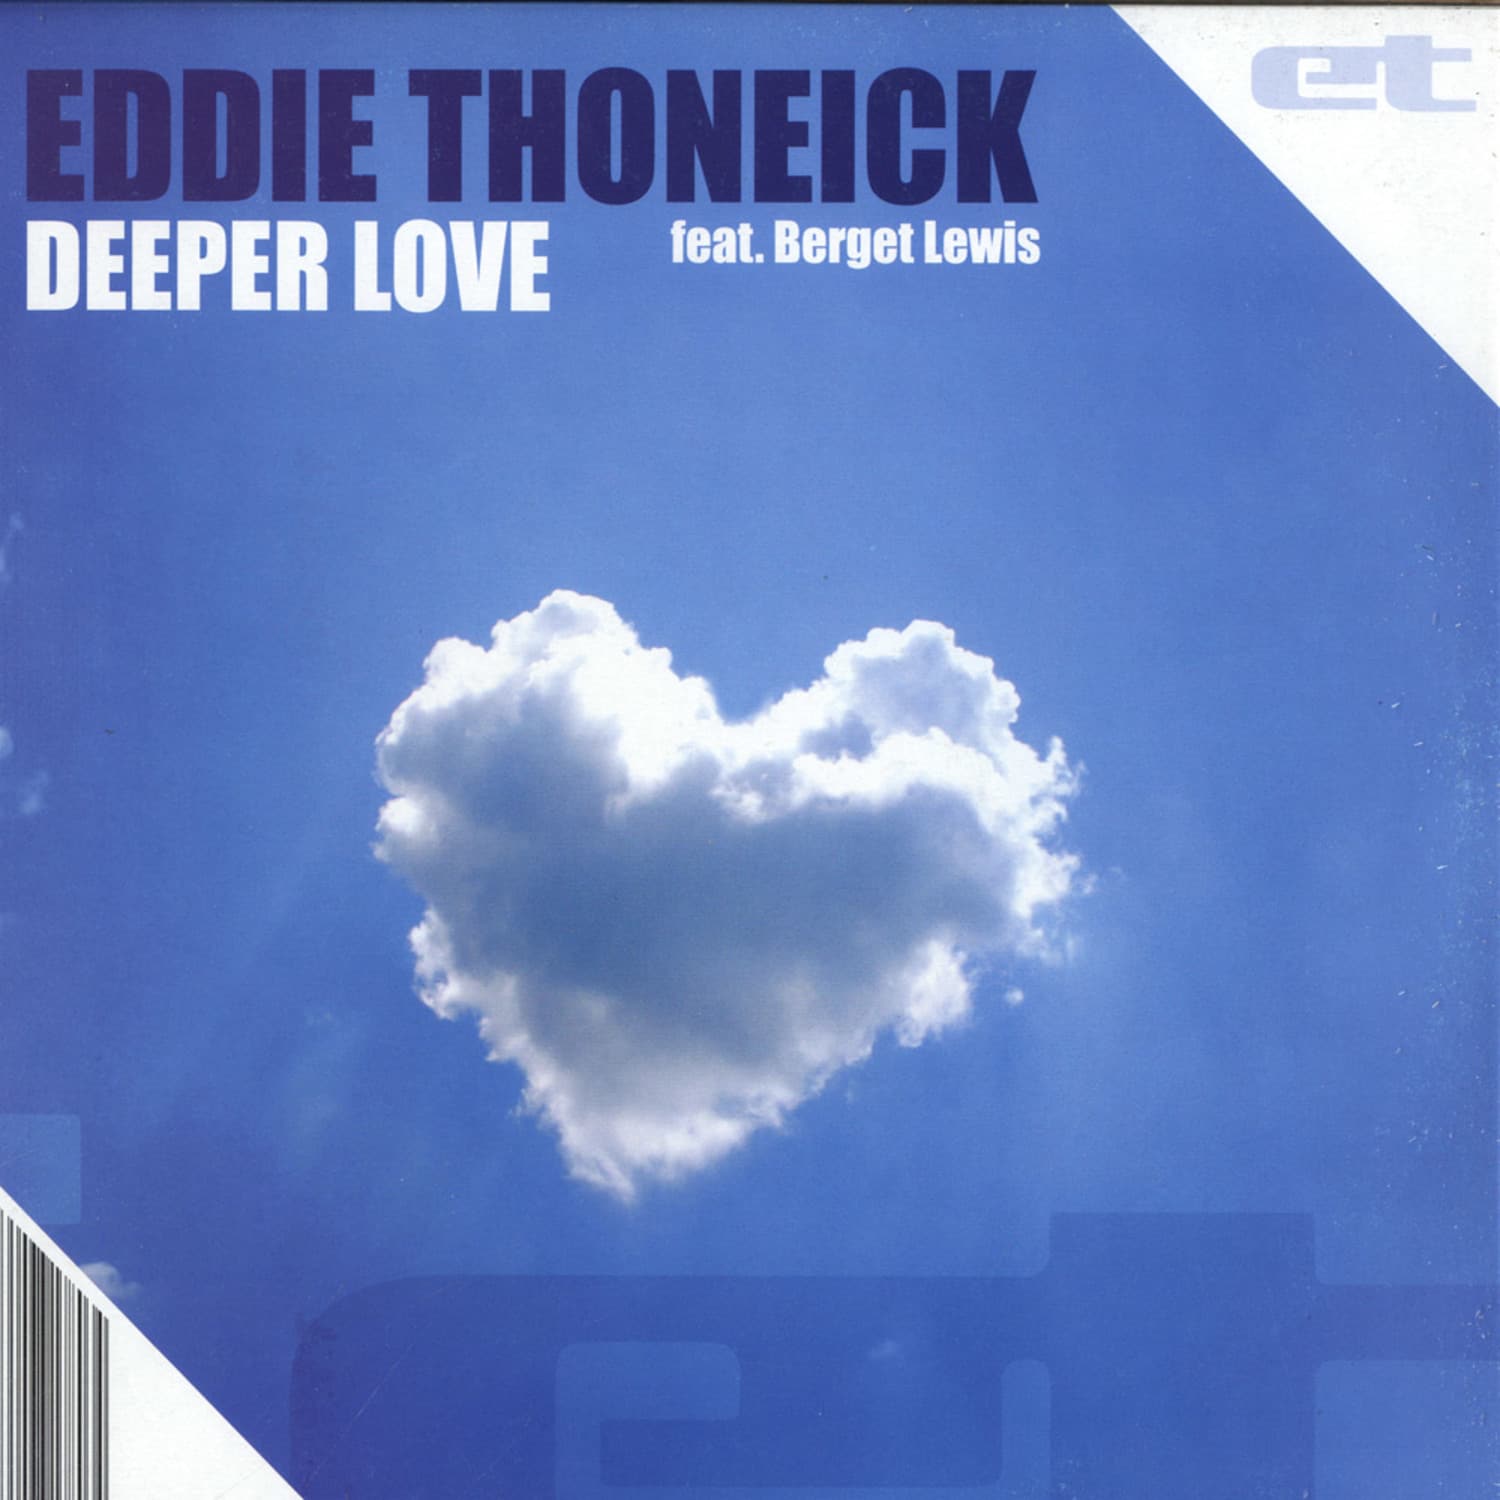 Eddie Thoneick ft. Berget Lewis - DEEPER LOVE